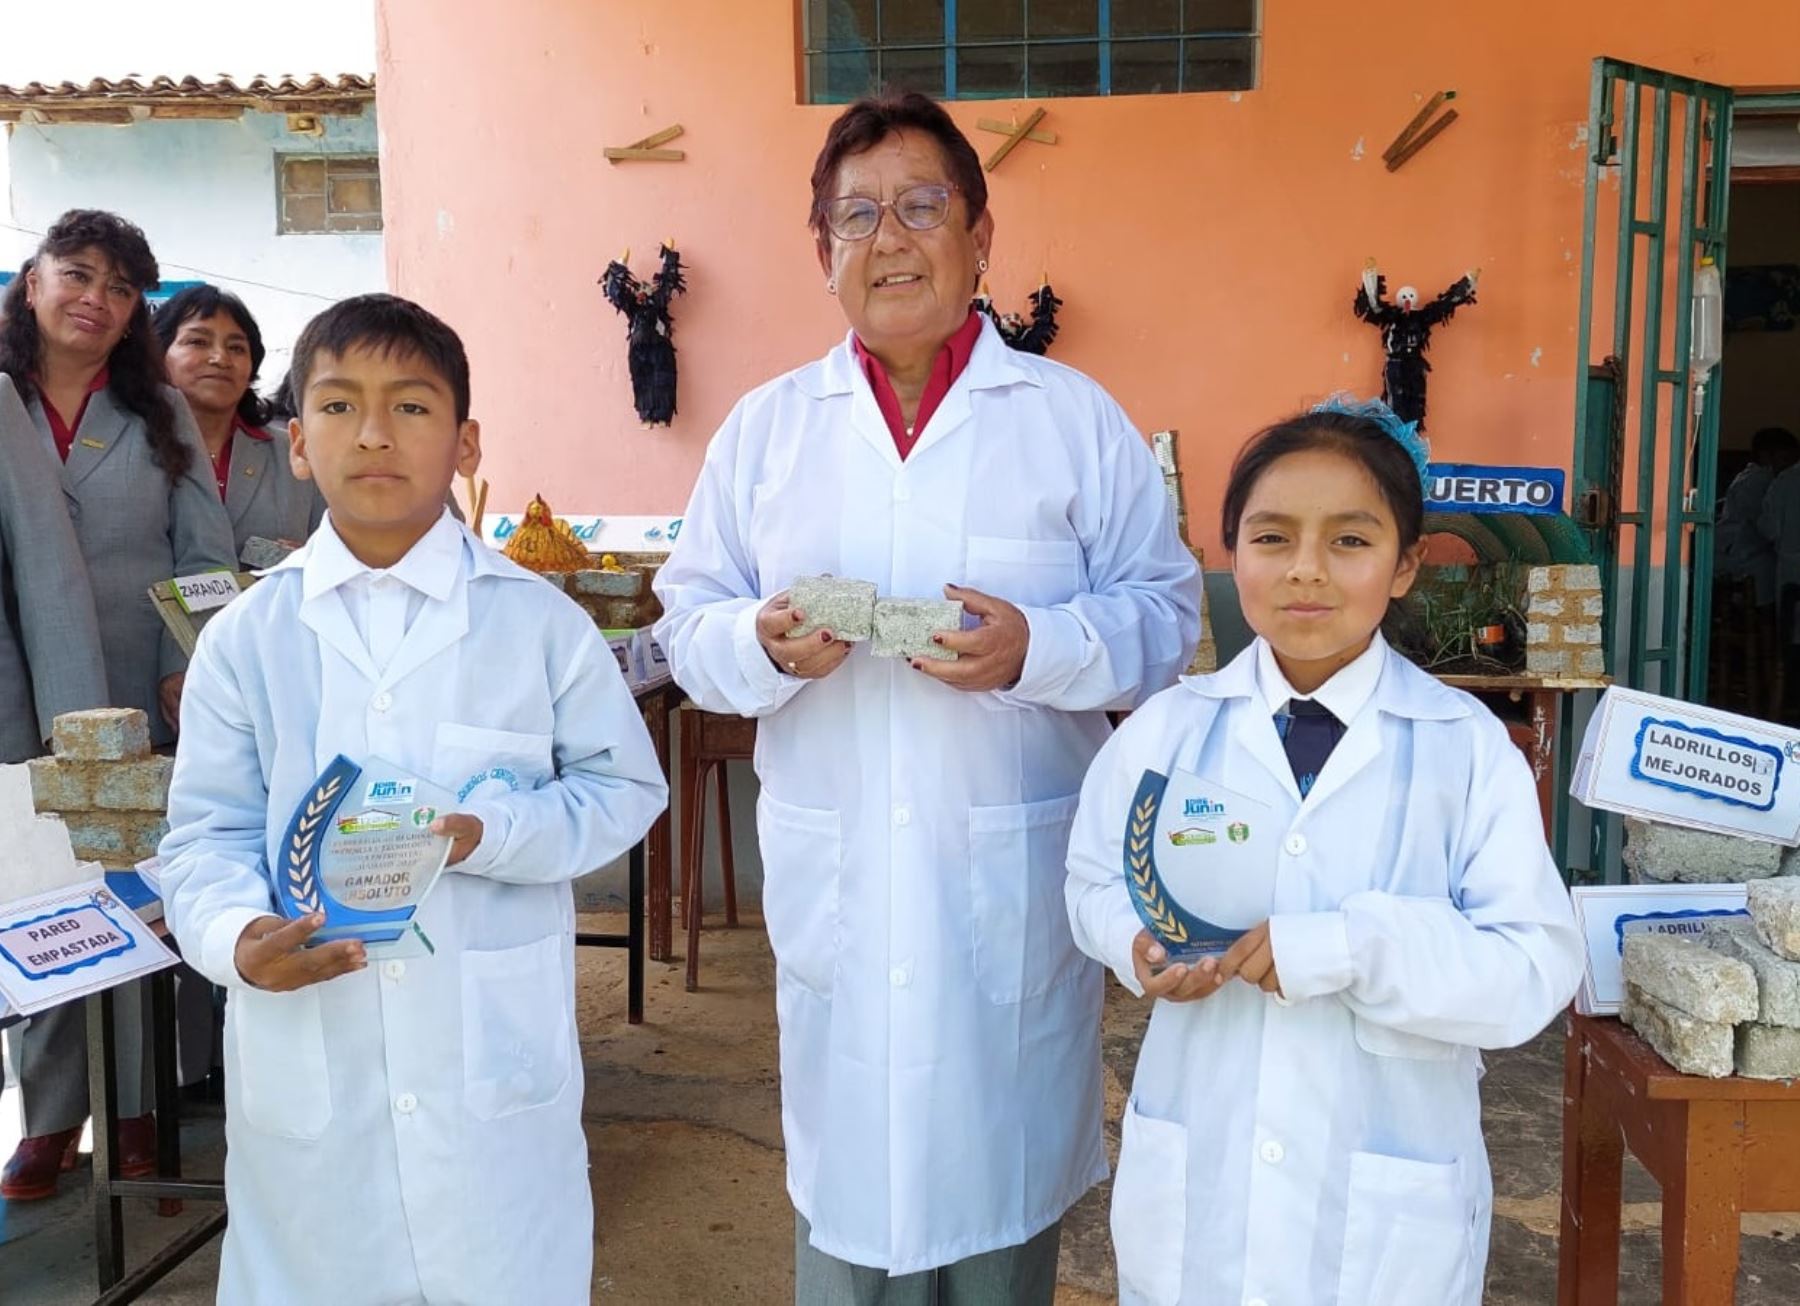 Estudiantes de colegio de San Jerónimo ganan concurso regional de ciencia y tecnología en Junín gracias a proyecto que impulsa la elaboración de ladrillos sostenibles. Foto: Pedro Tinoco.